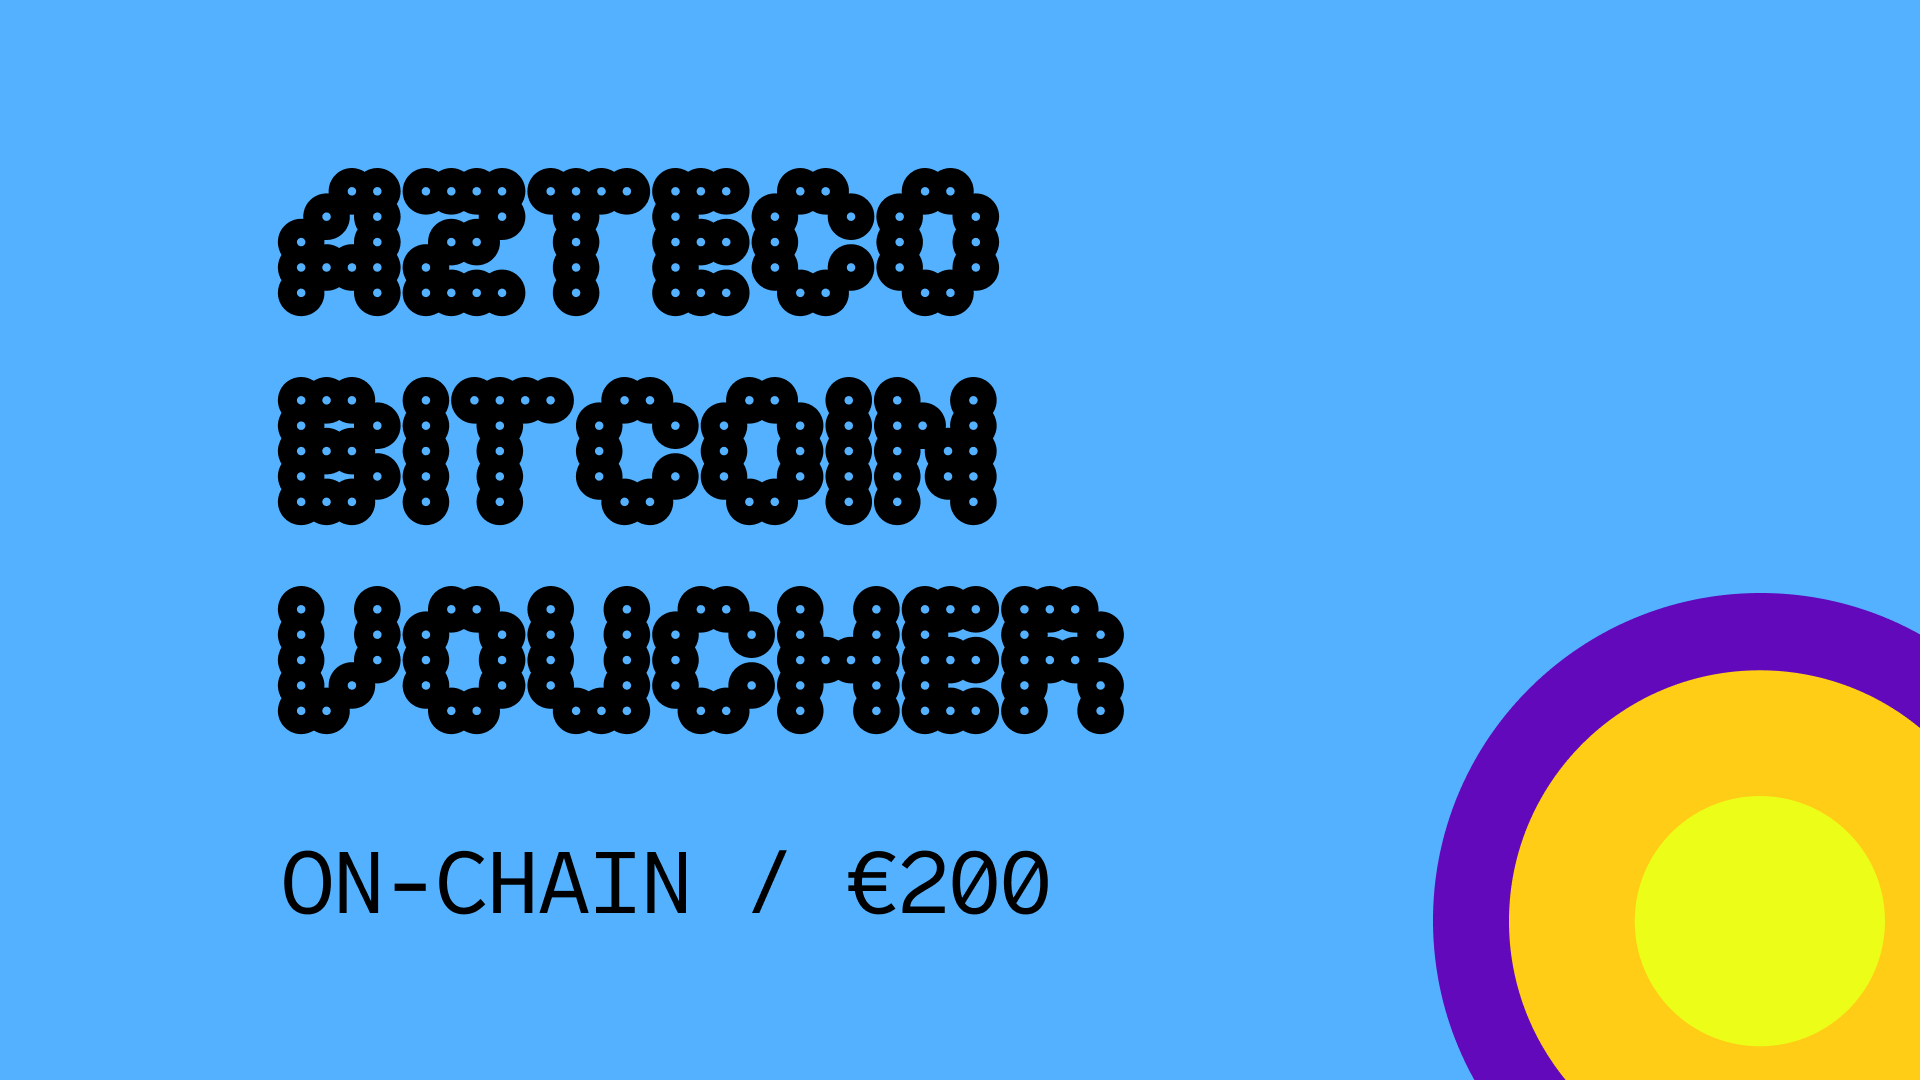 (225.98$) Azteco Bitcoin On-Chain €200 Voucher